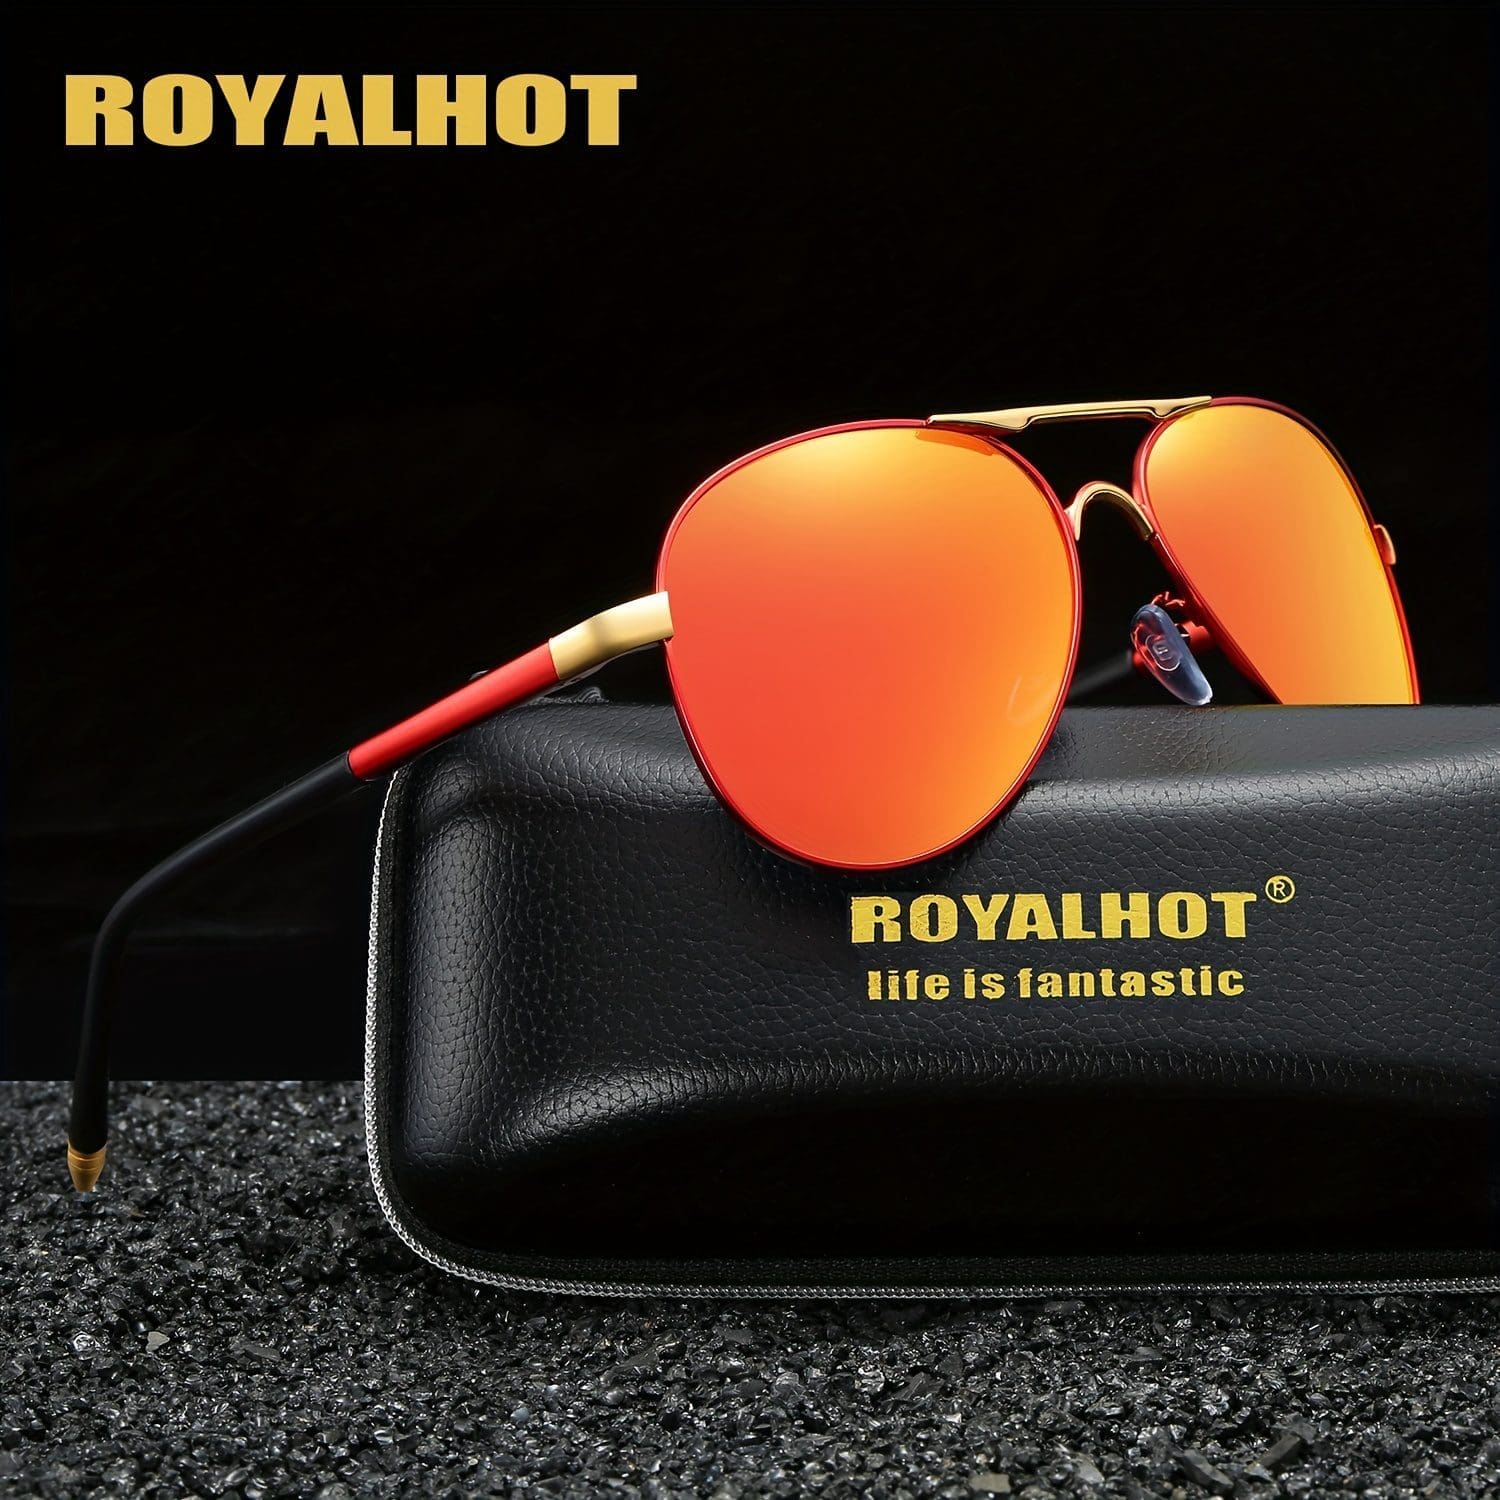 Royalhot Glasses